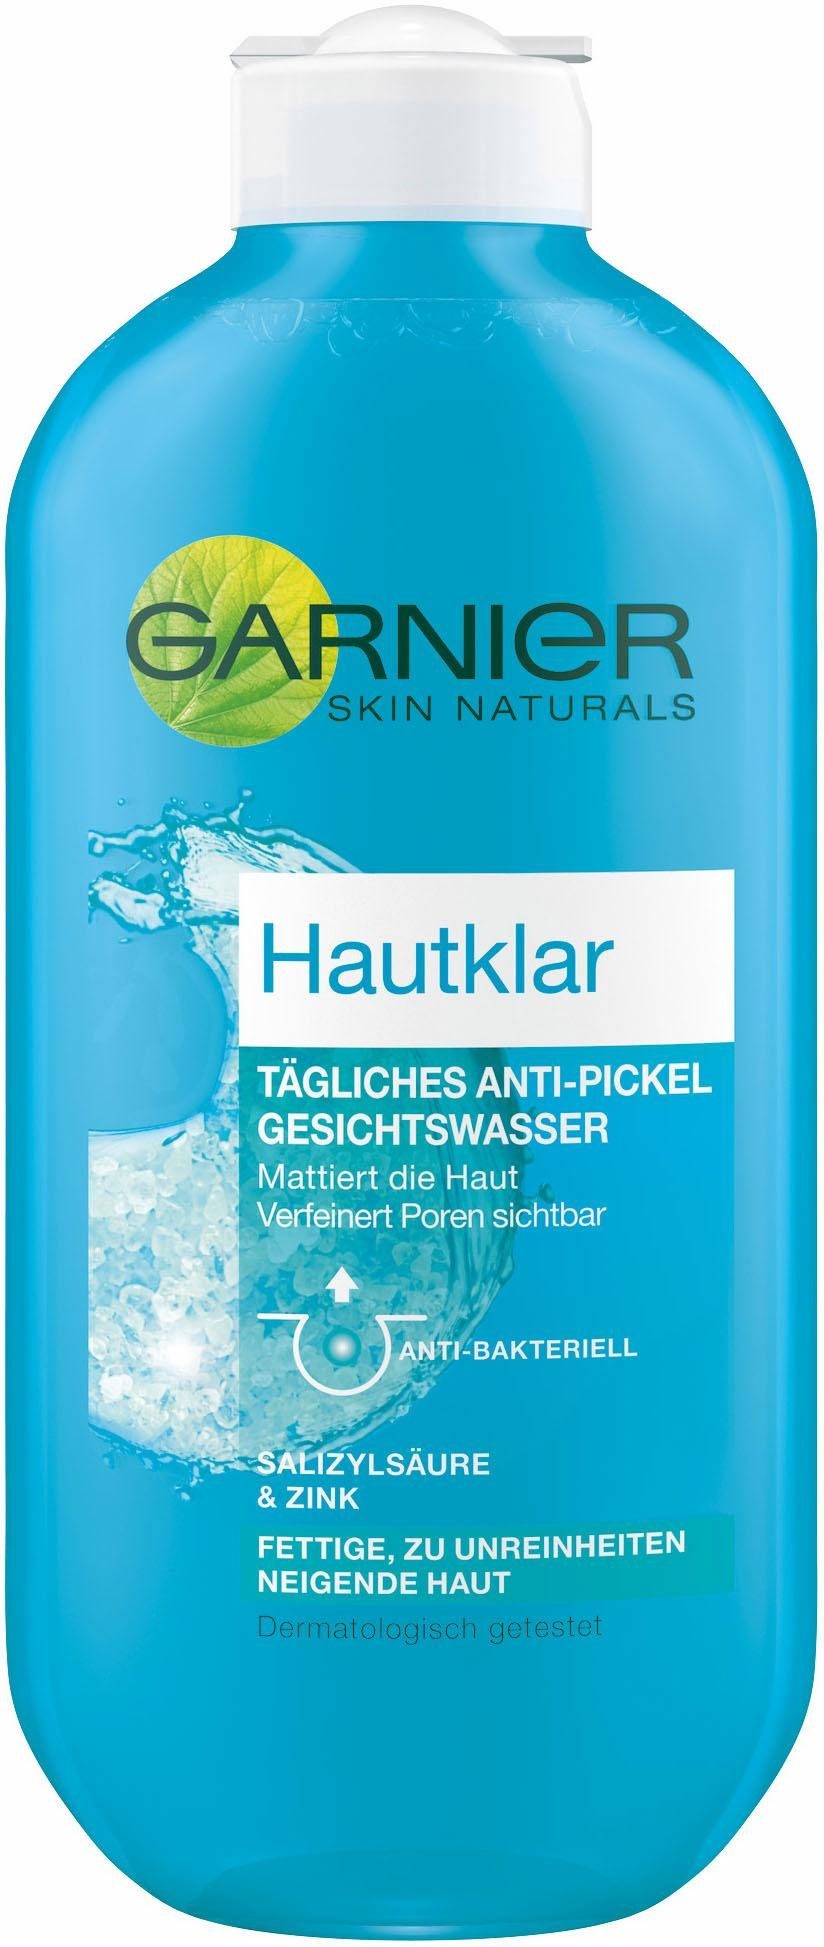 GARNIER Gesichtswasser »Hautklar«, Anti-Pickel